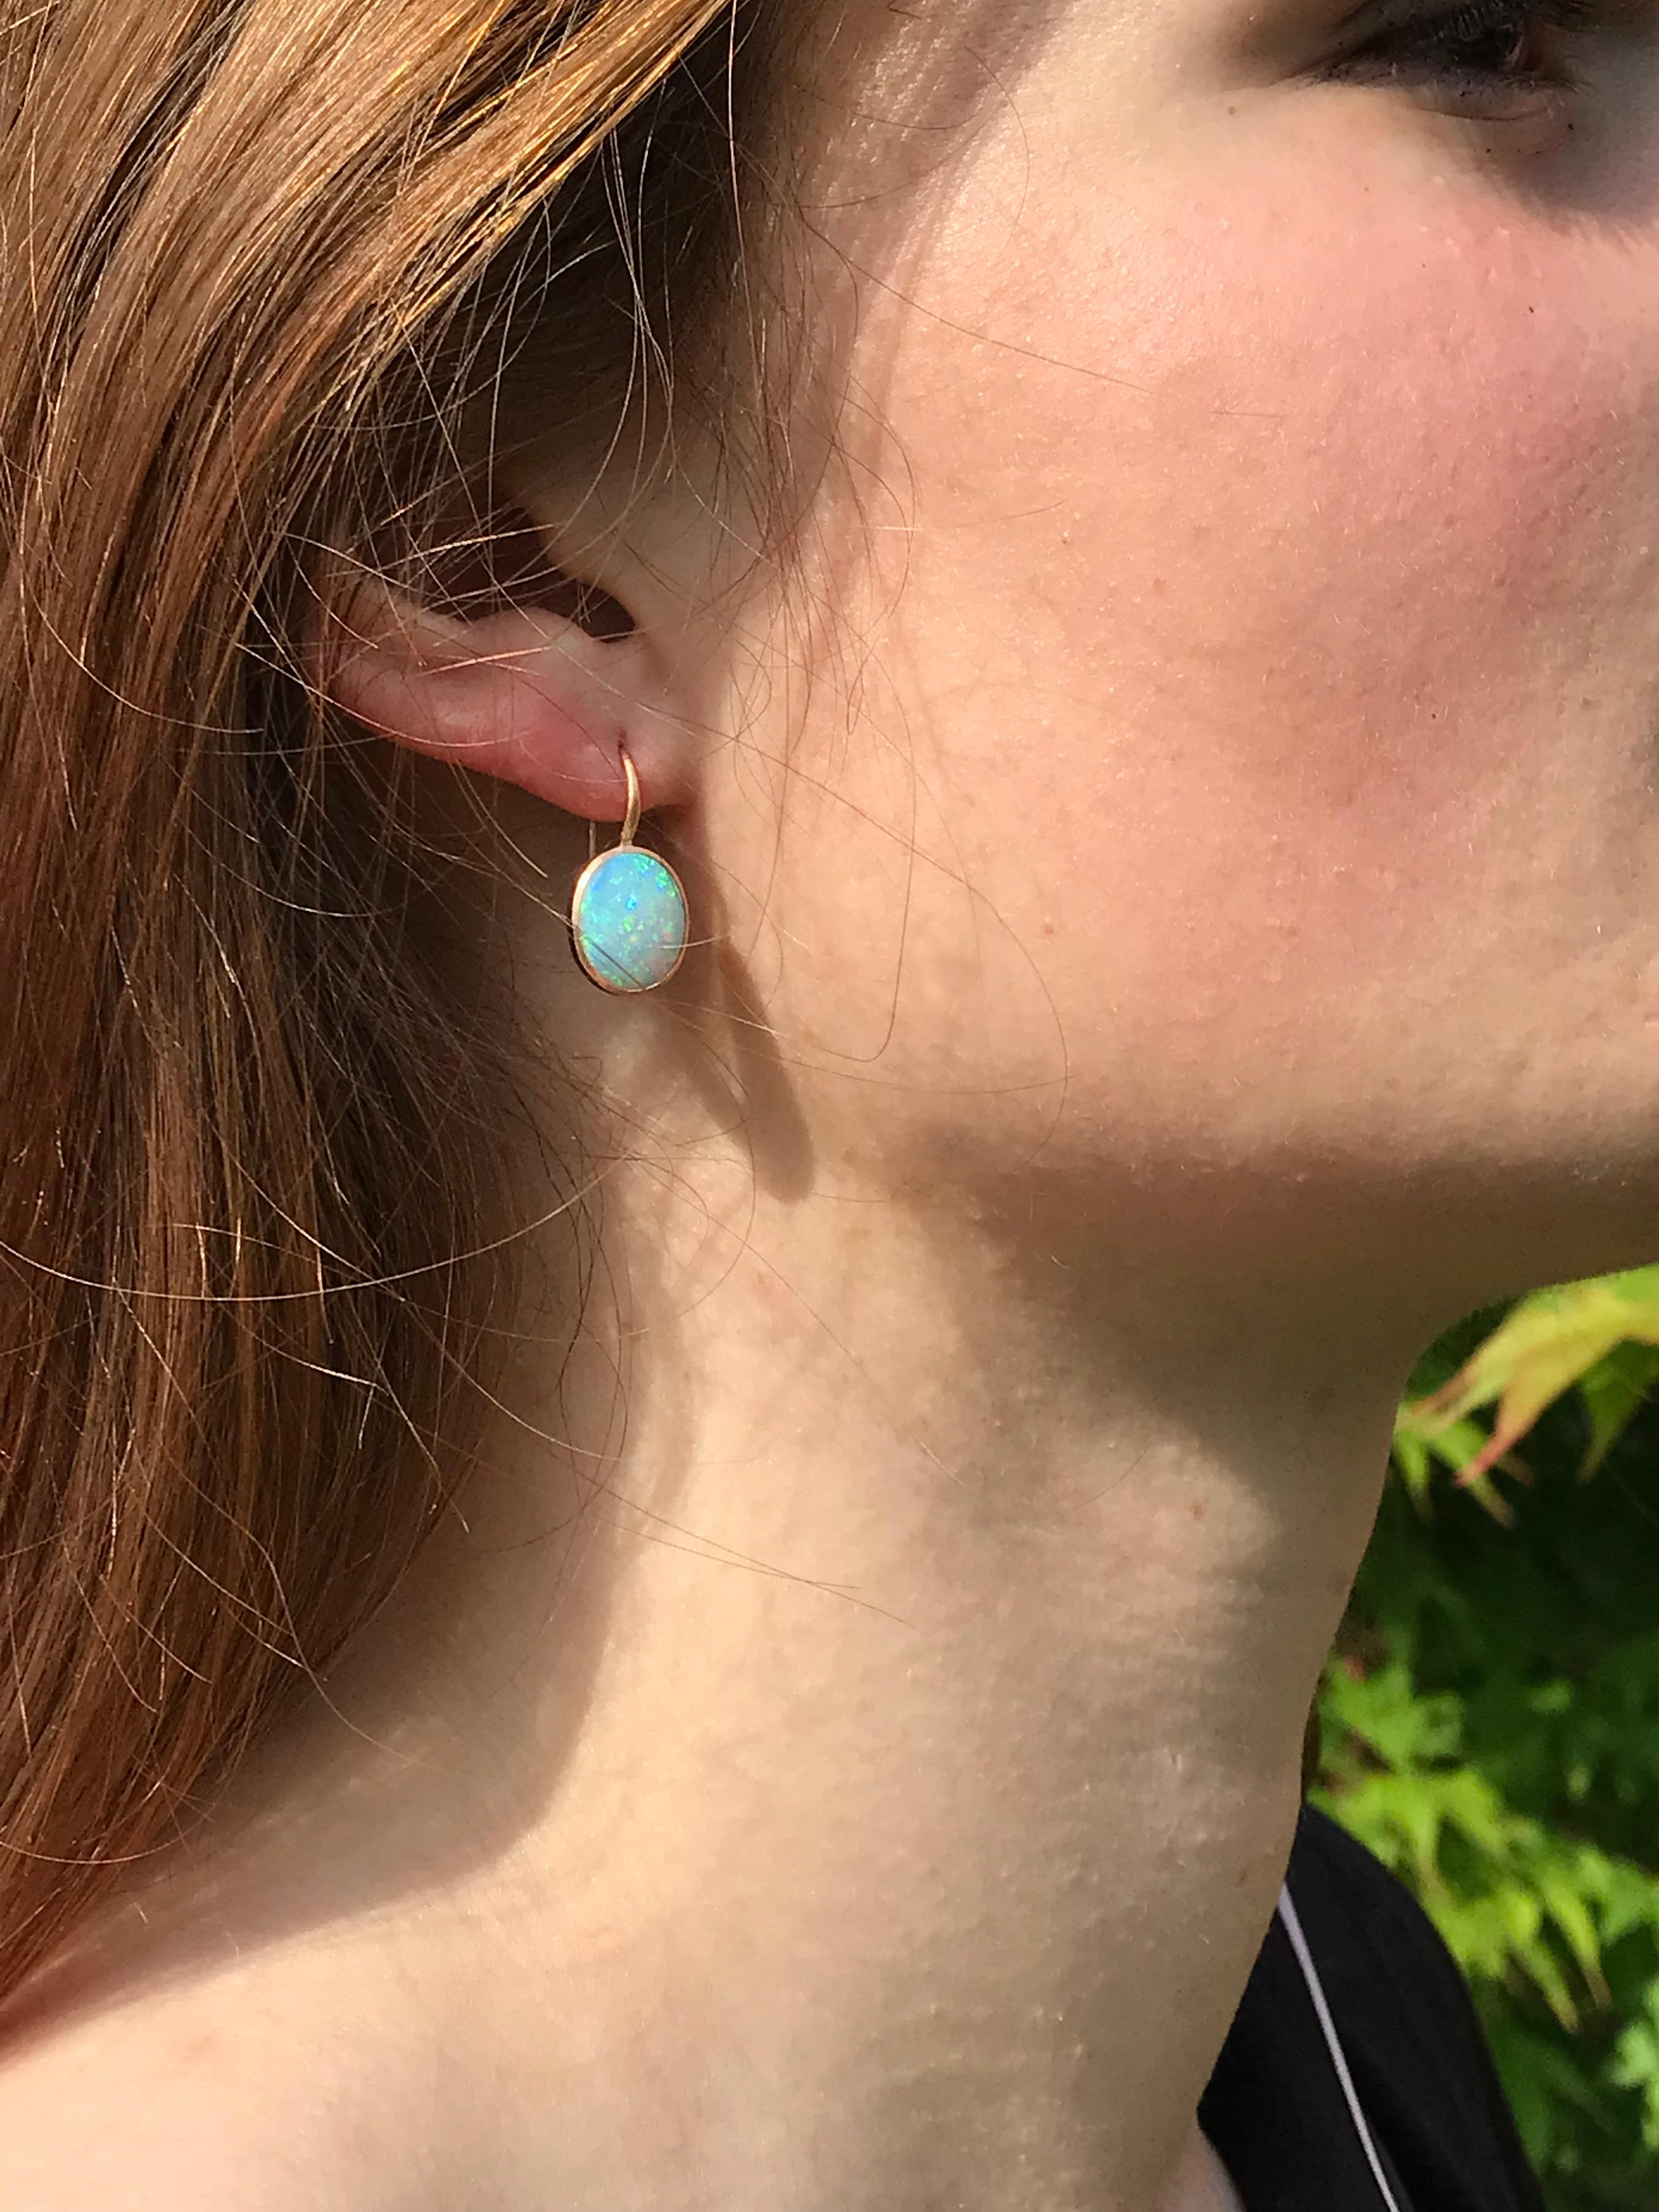 australian opal earrings gold